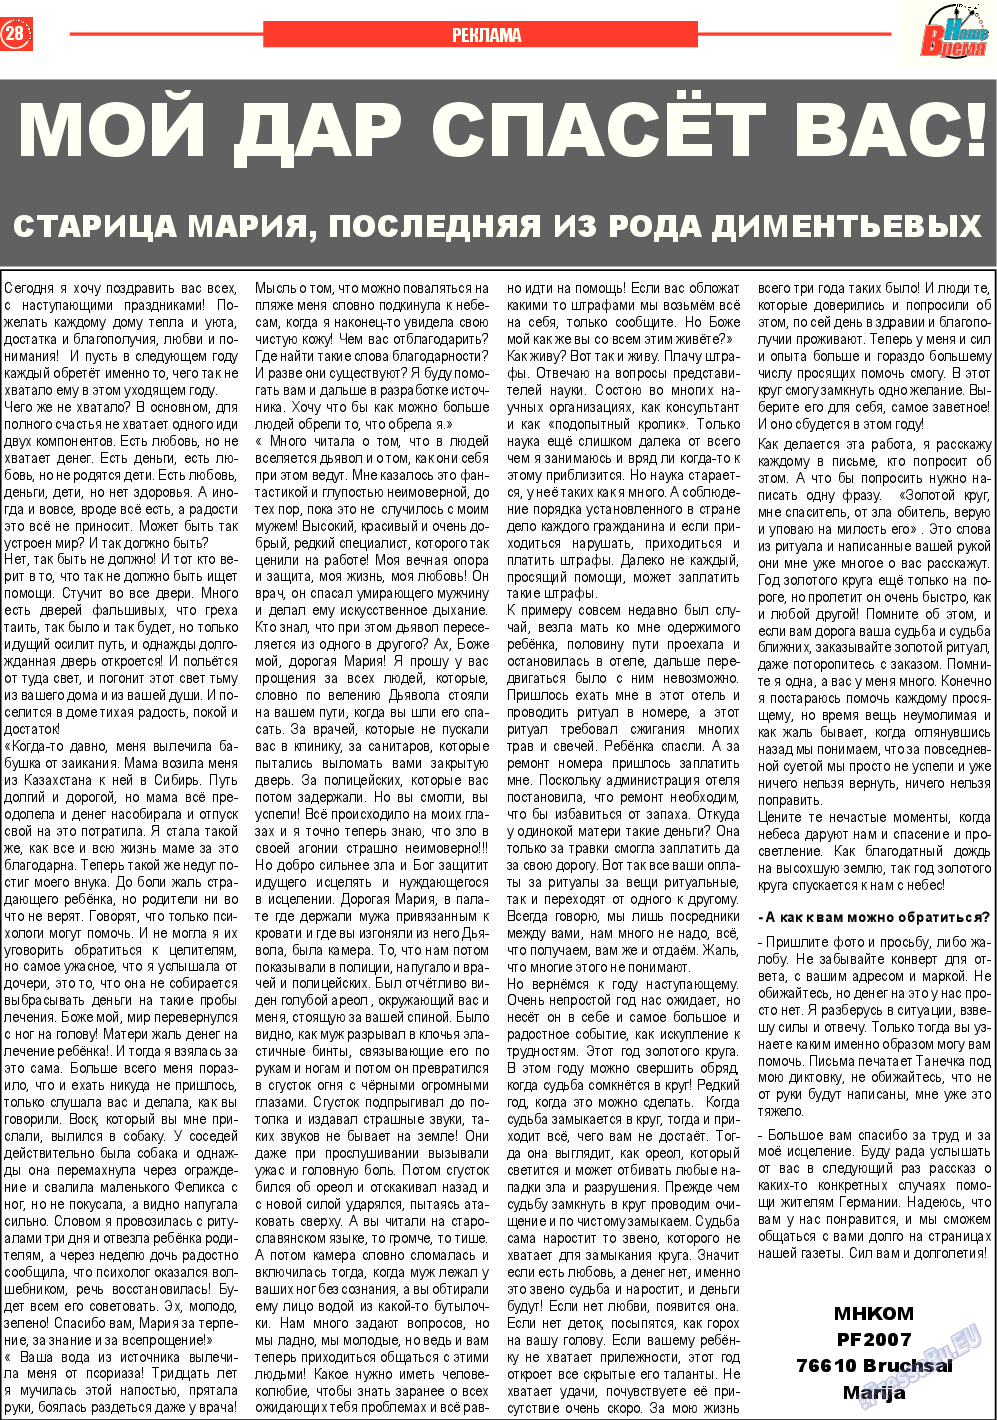 Наше время, газета. 2014 №12 стр.28